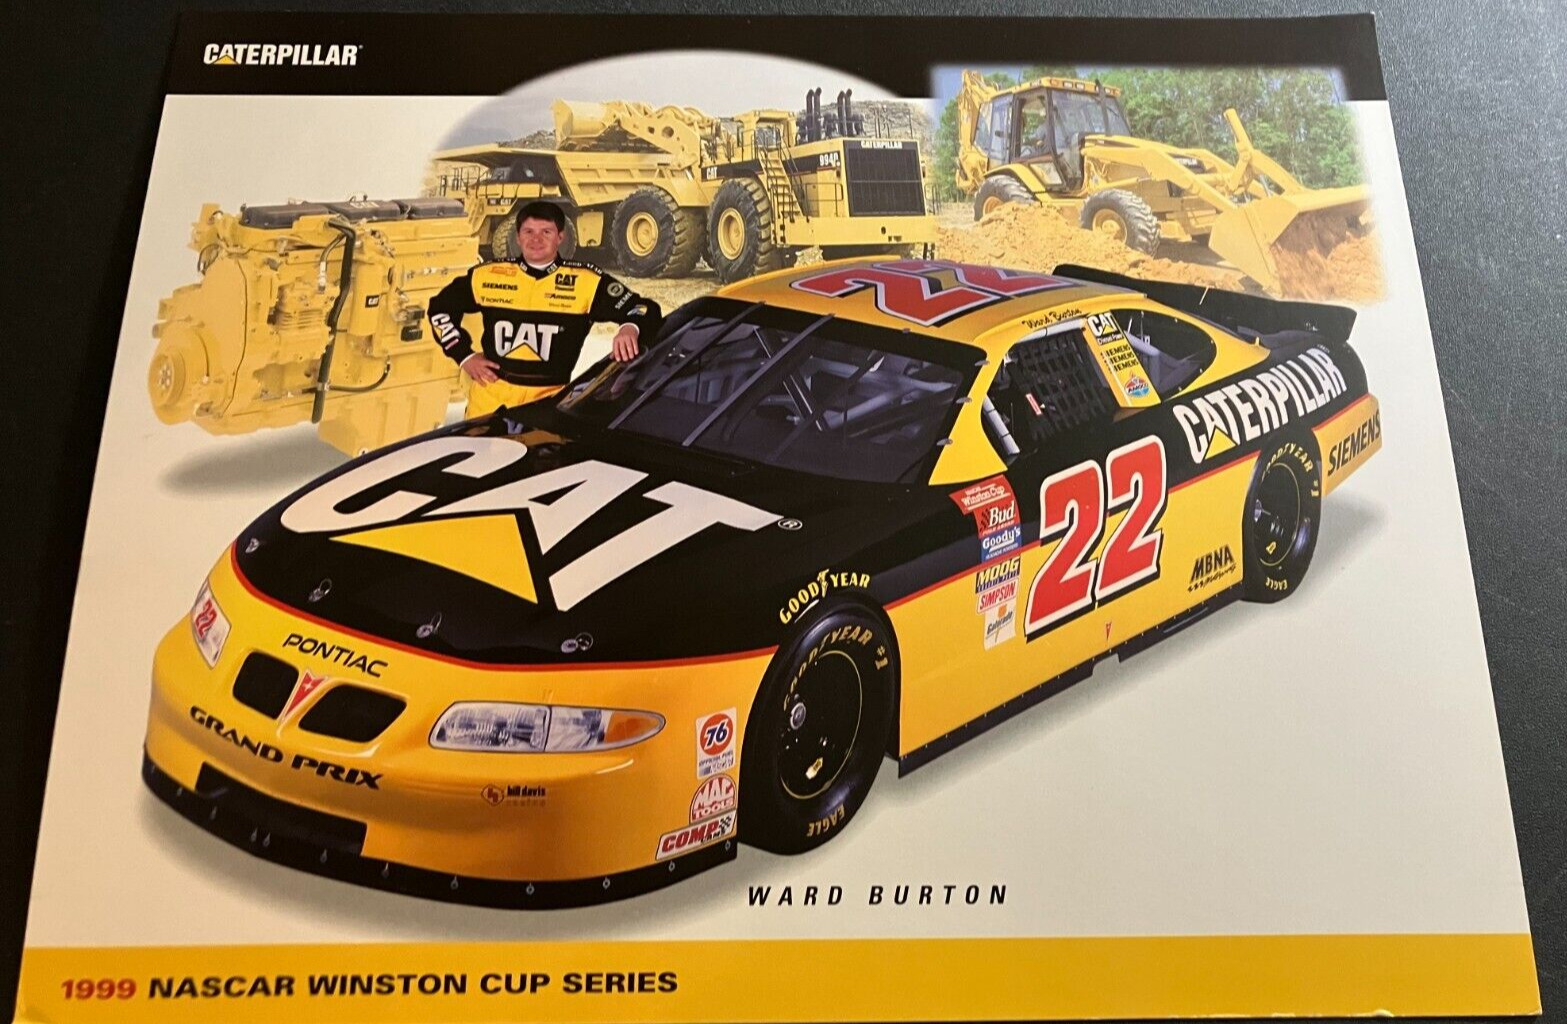 1999 Ward Burton #22 CAT Caterpillar Pontiac - NASCAR Racing Hero Card Handout